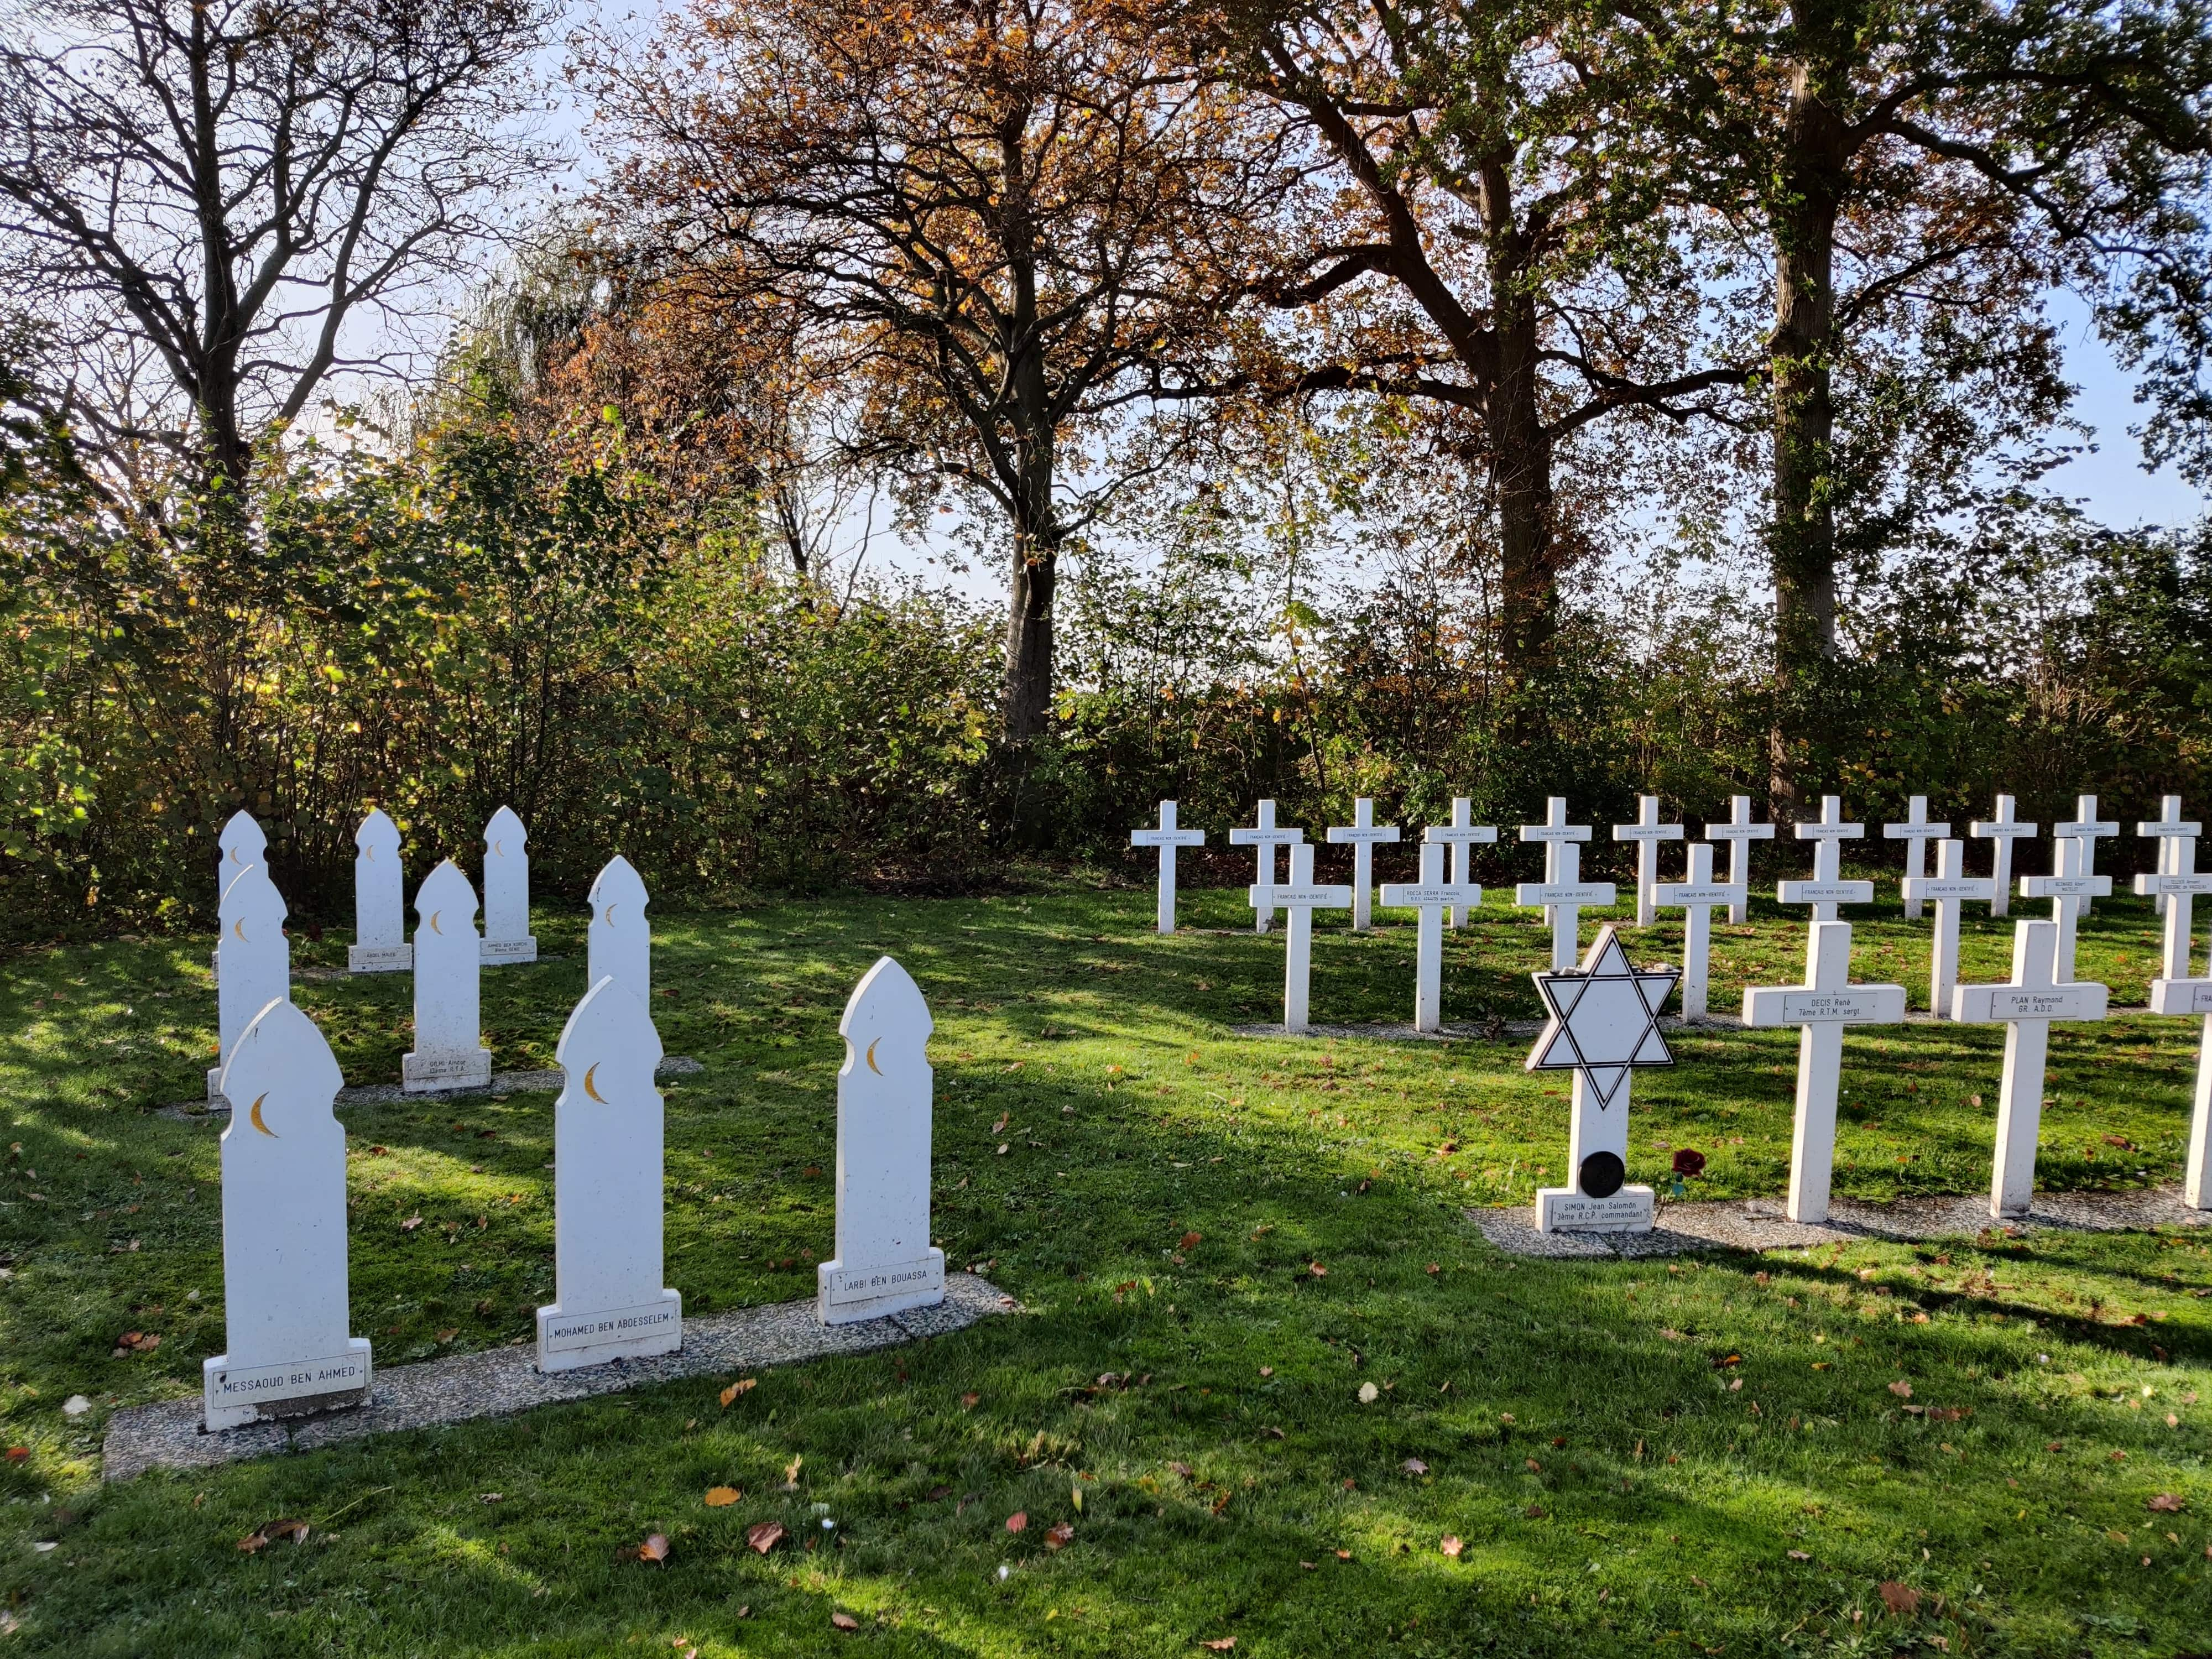 De graven van Marokkaanse militairen, gesneuveld in Franse dienst, op het Franse Militaire ereveld in Kapelle. Daarnaast een Joods graf en een groot aantal christelijke Franse graven.